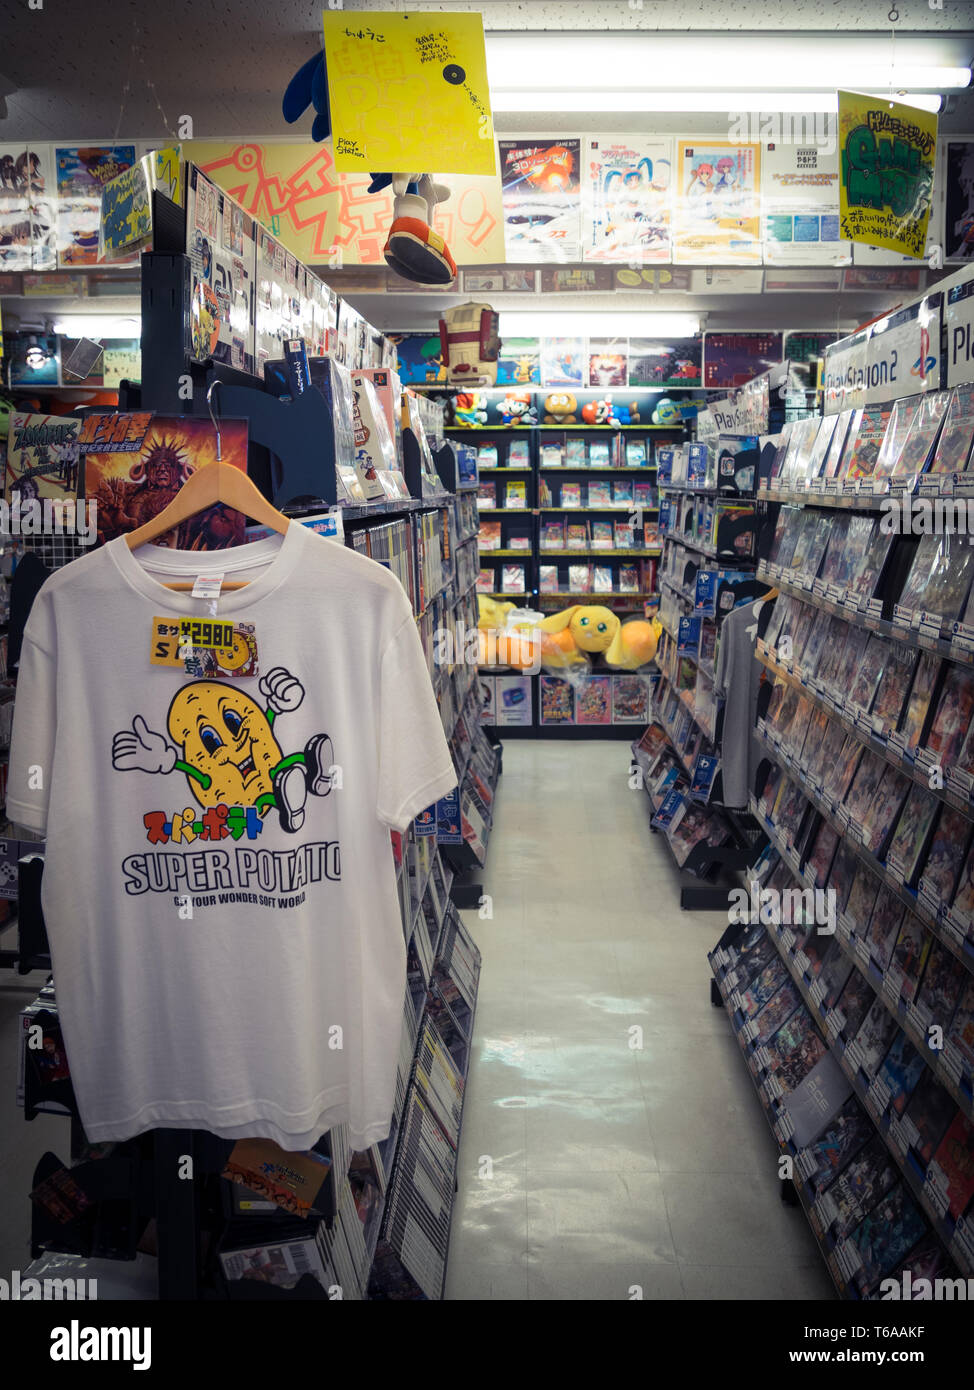 El interior de la famosa tienda de videojuegos retro, Super Potato Retro-kan, ubicada en el distrito de la Ciudad Electrónica de Akihabara, Tokio, Japón. Foto de stock